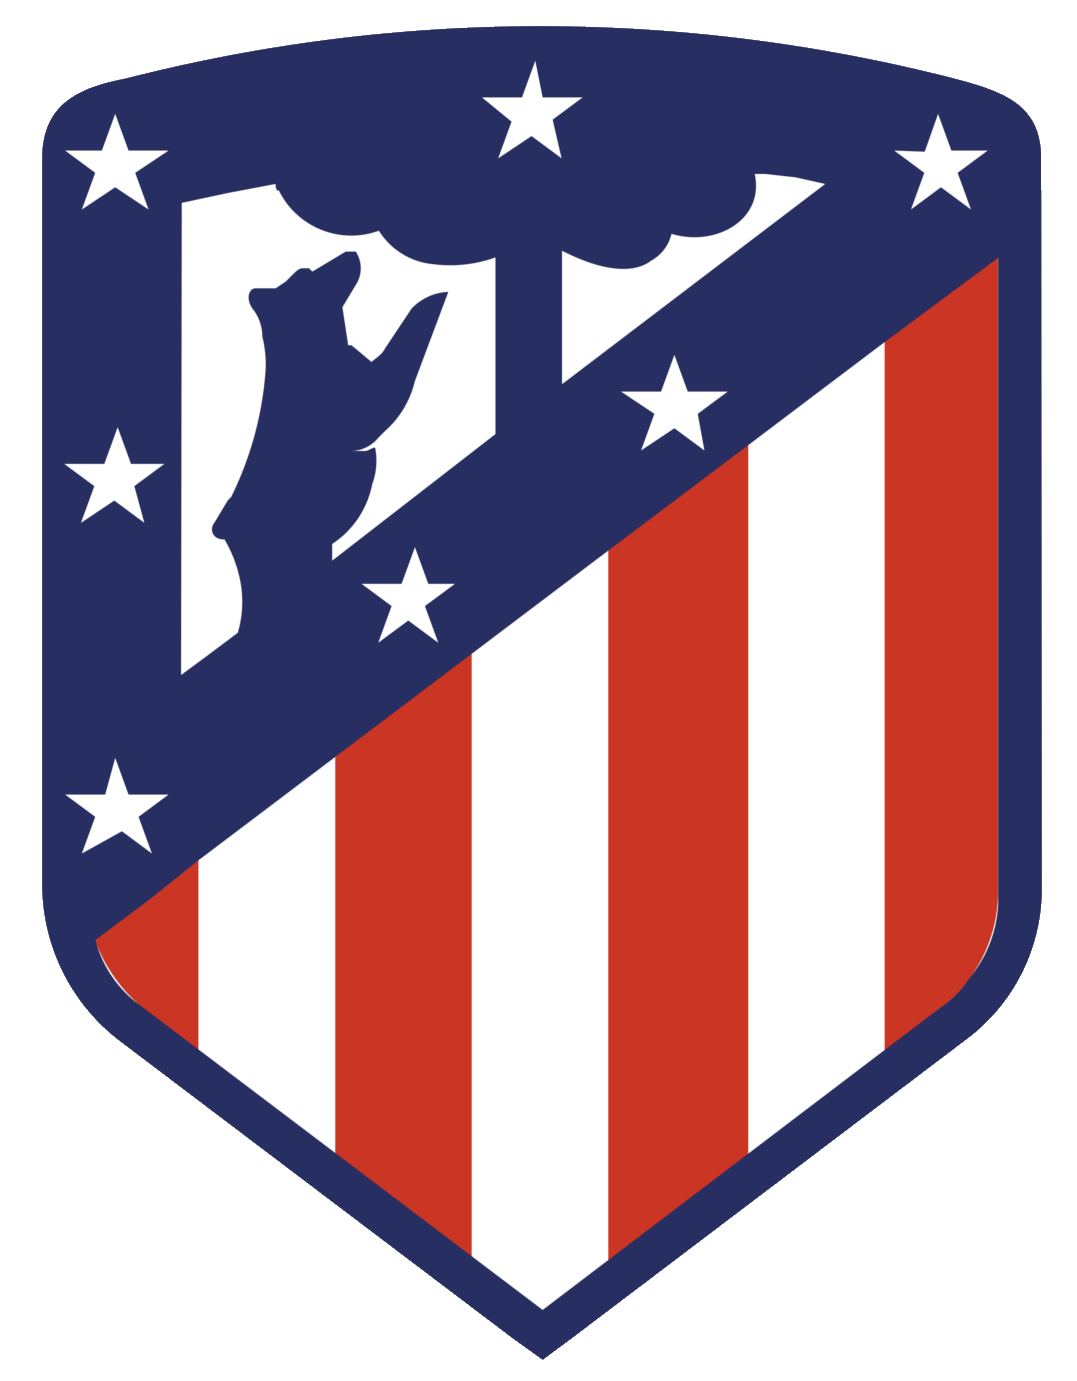 Wappen ehemals Club Atlético de Madrid  2979